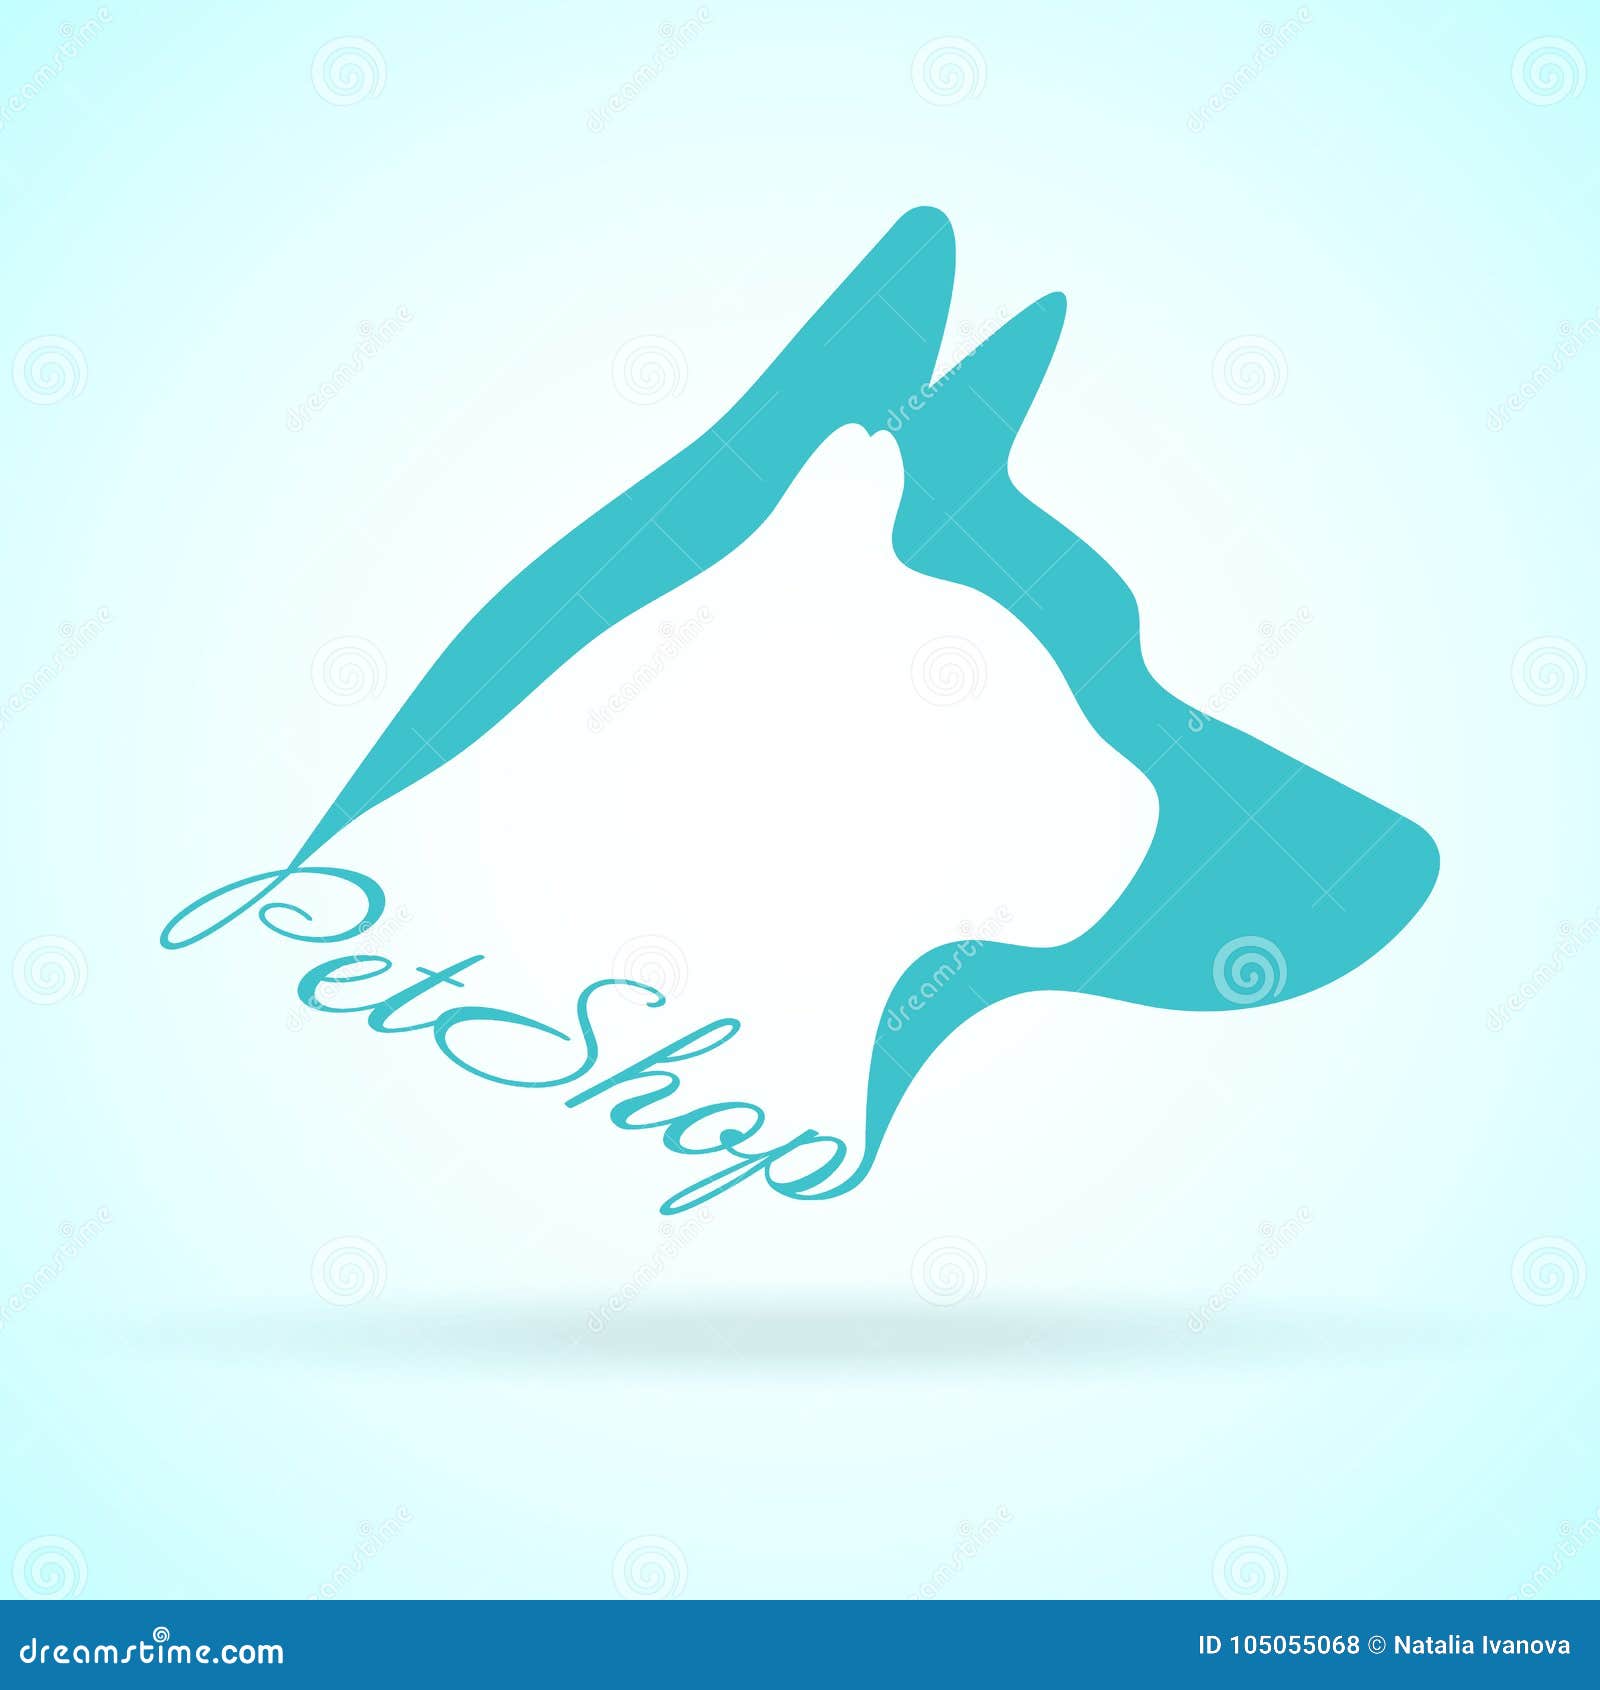  image of pets  on background. petshop, dog, cat. animal logo